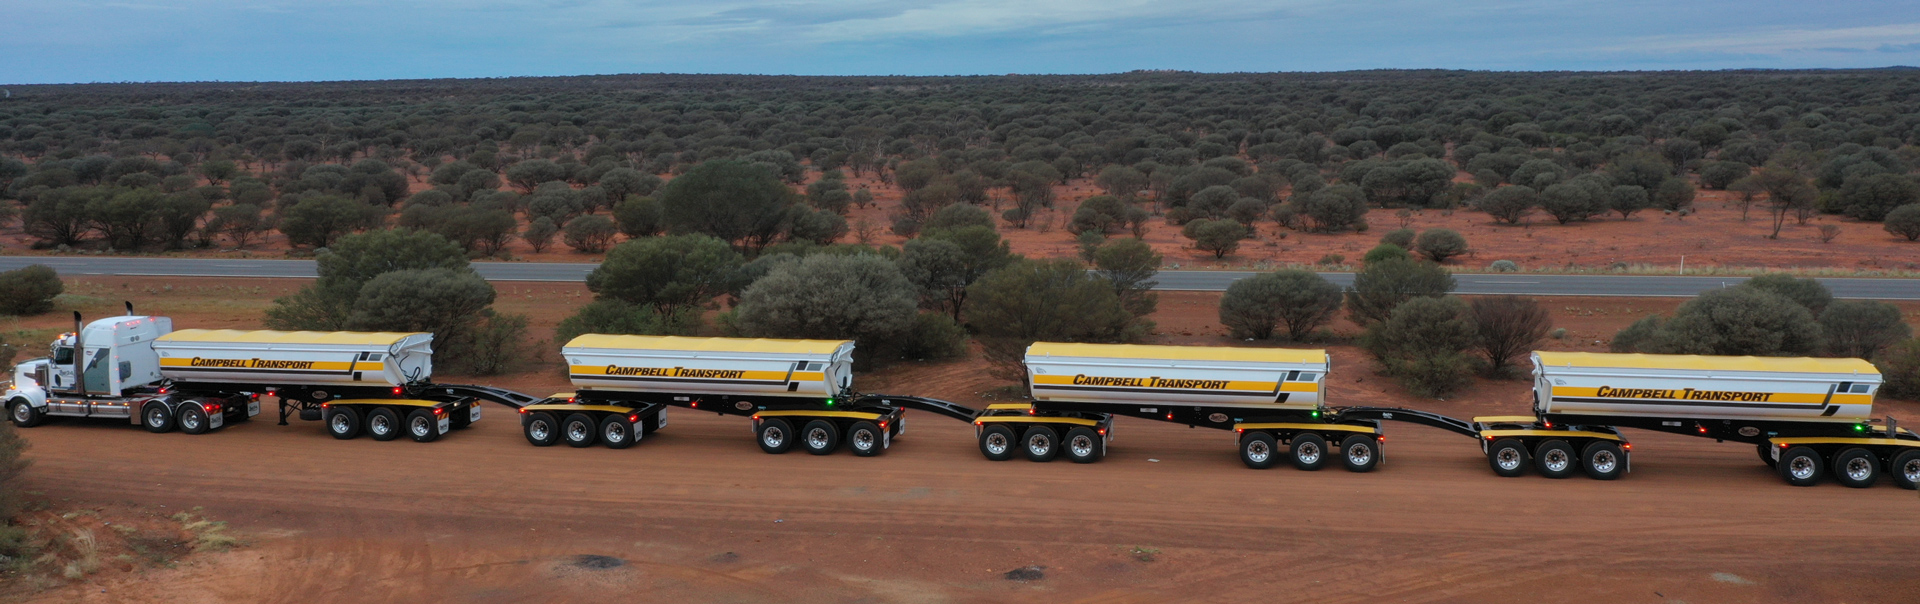 Un train routier de remorques à bennes basculantes à déchargement latéral en Australie